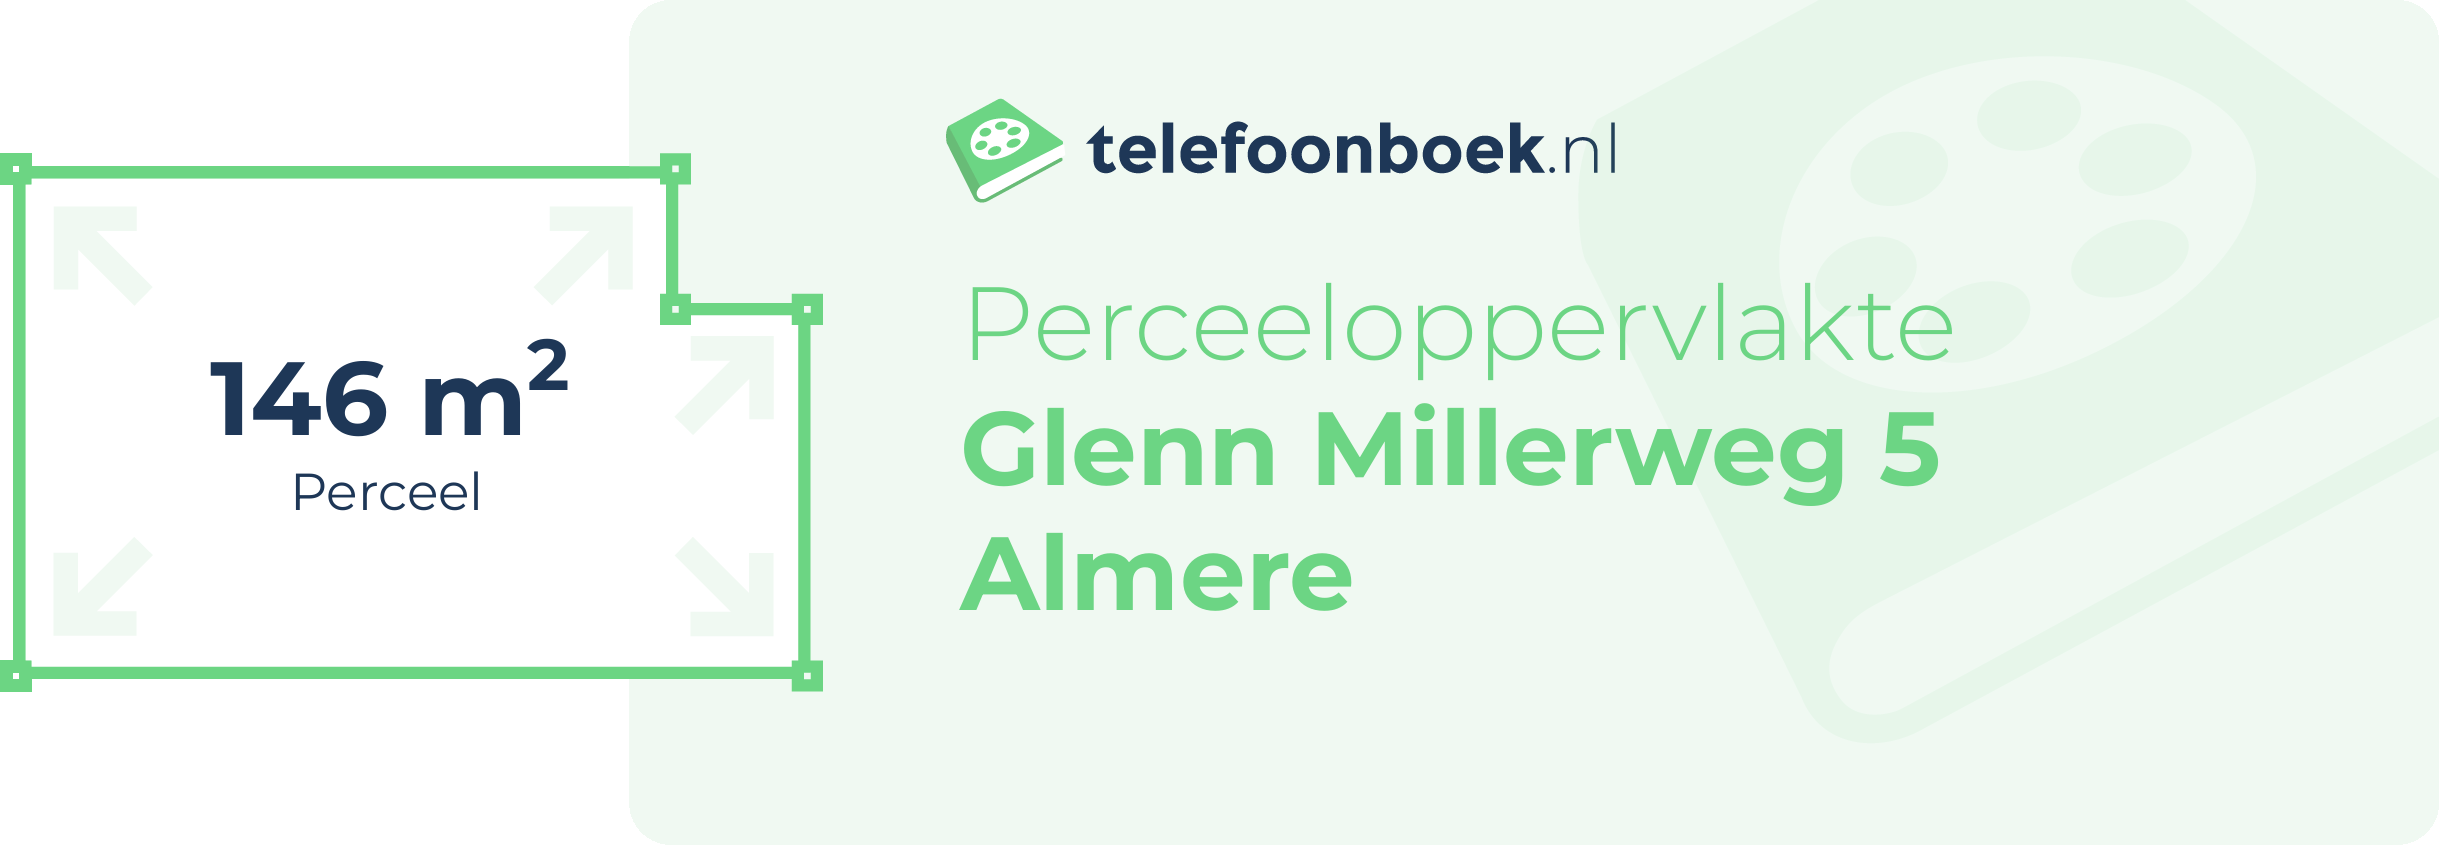 Perceeloppervlakte Glenn Millerweg 5 Almere